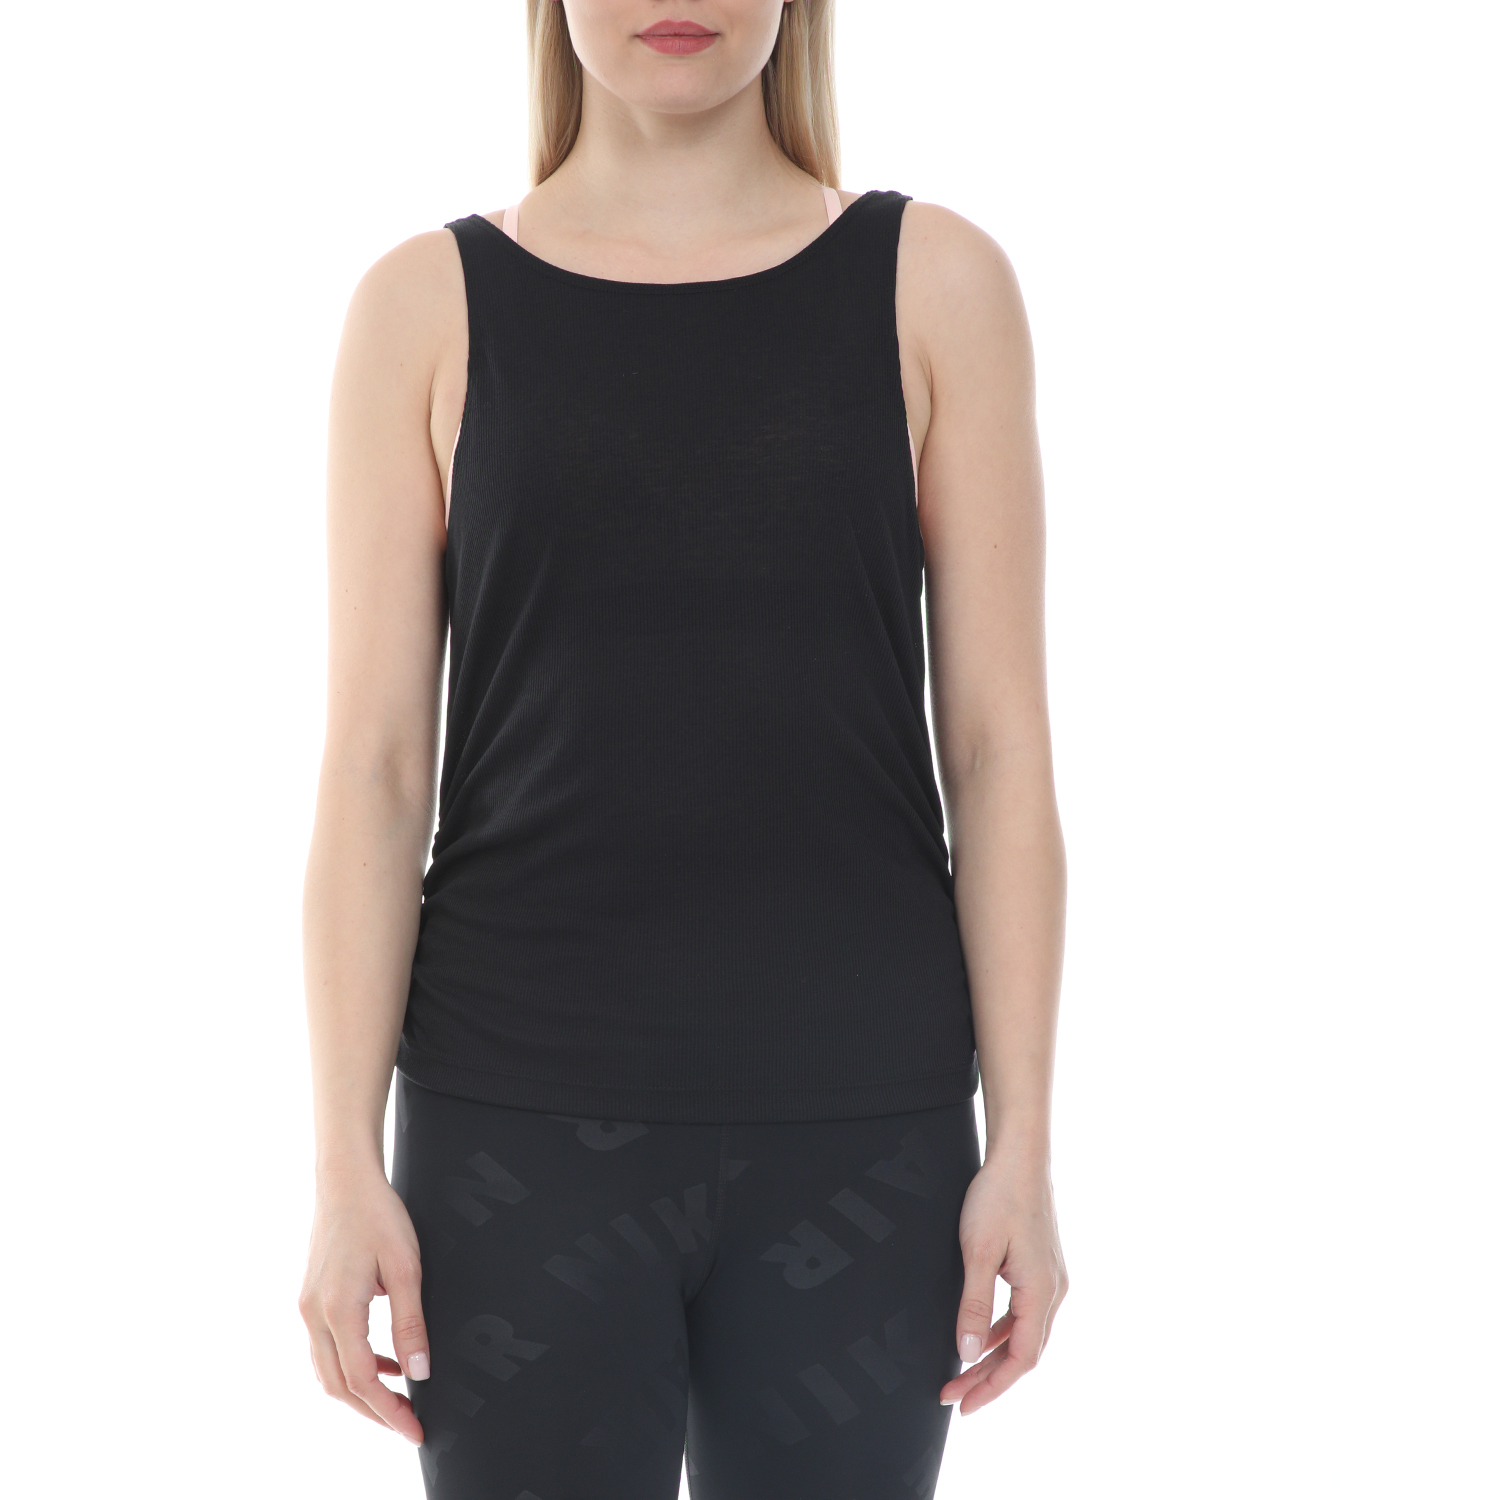 Γυναικεία/Ρούχα/Αθλητικά/T-shirt-Τοπ NIKE - Γυναικείο top NIKE YOGA RUCHE TANK μαύρο